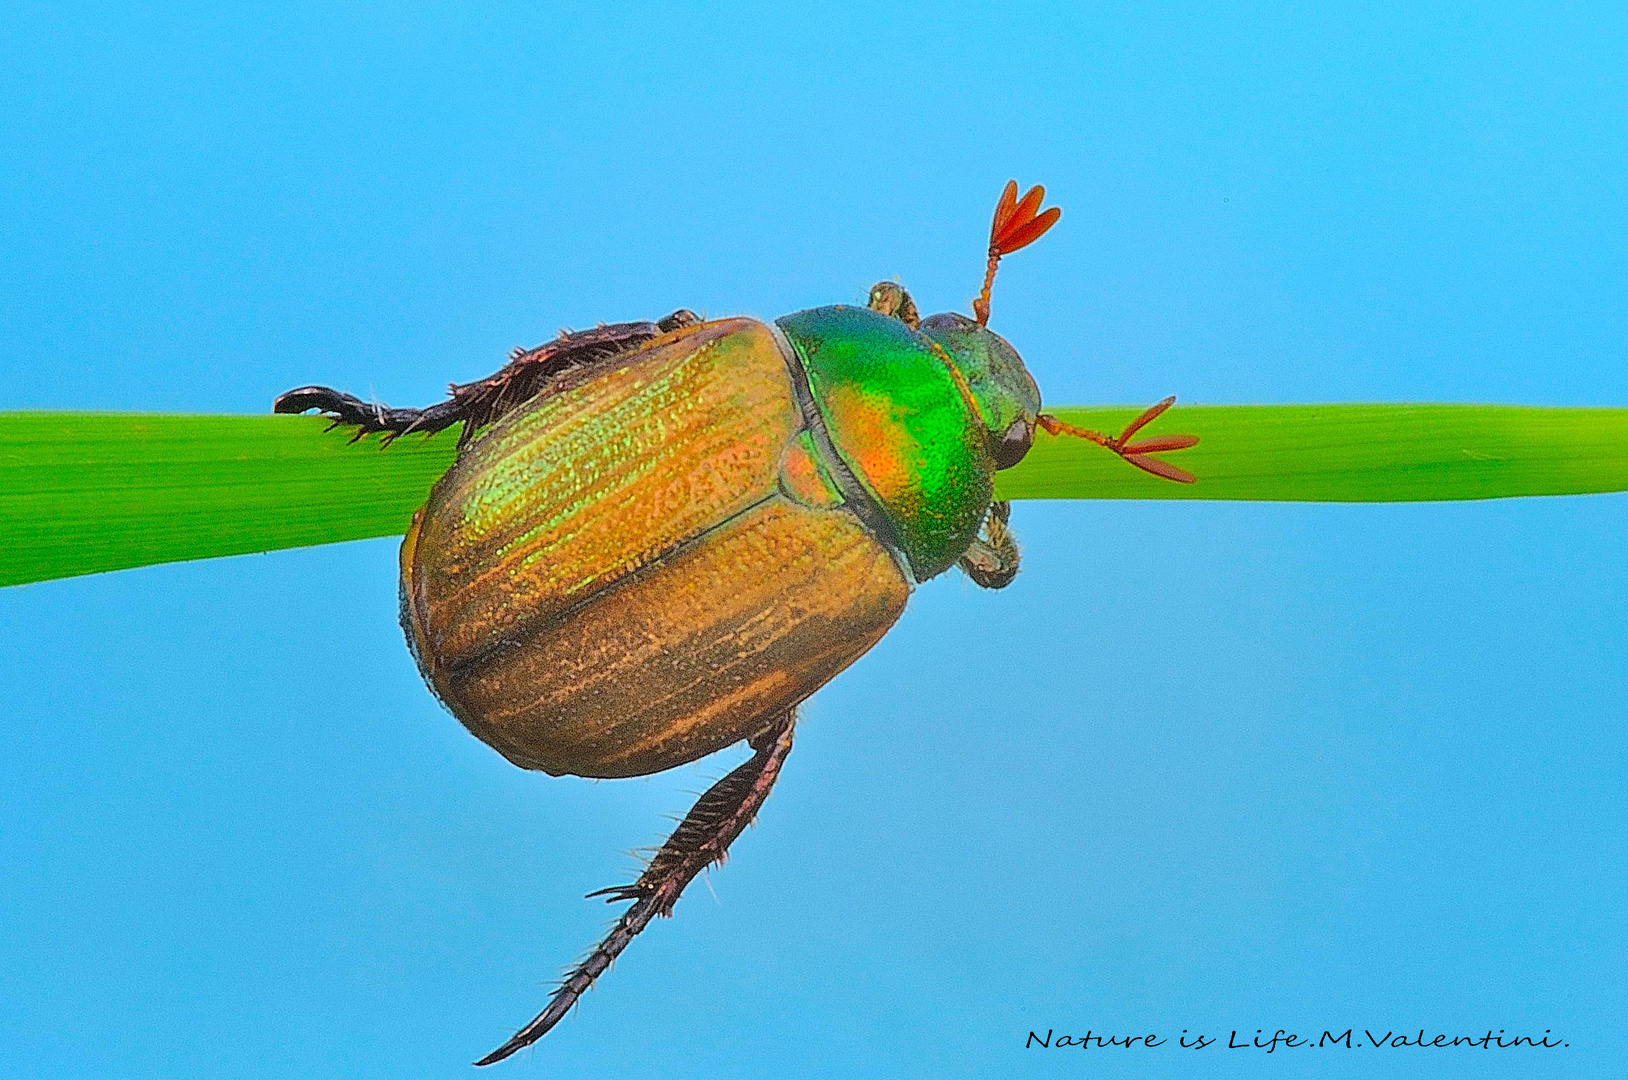 Beetle (Scarabeo)